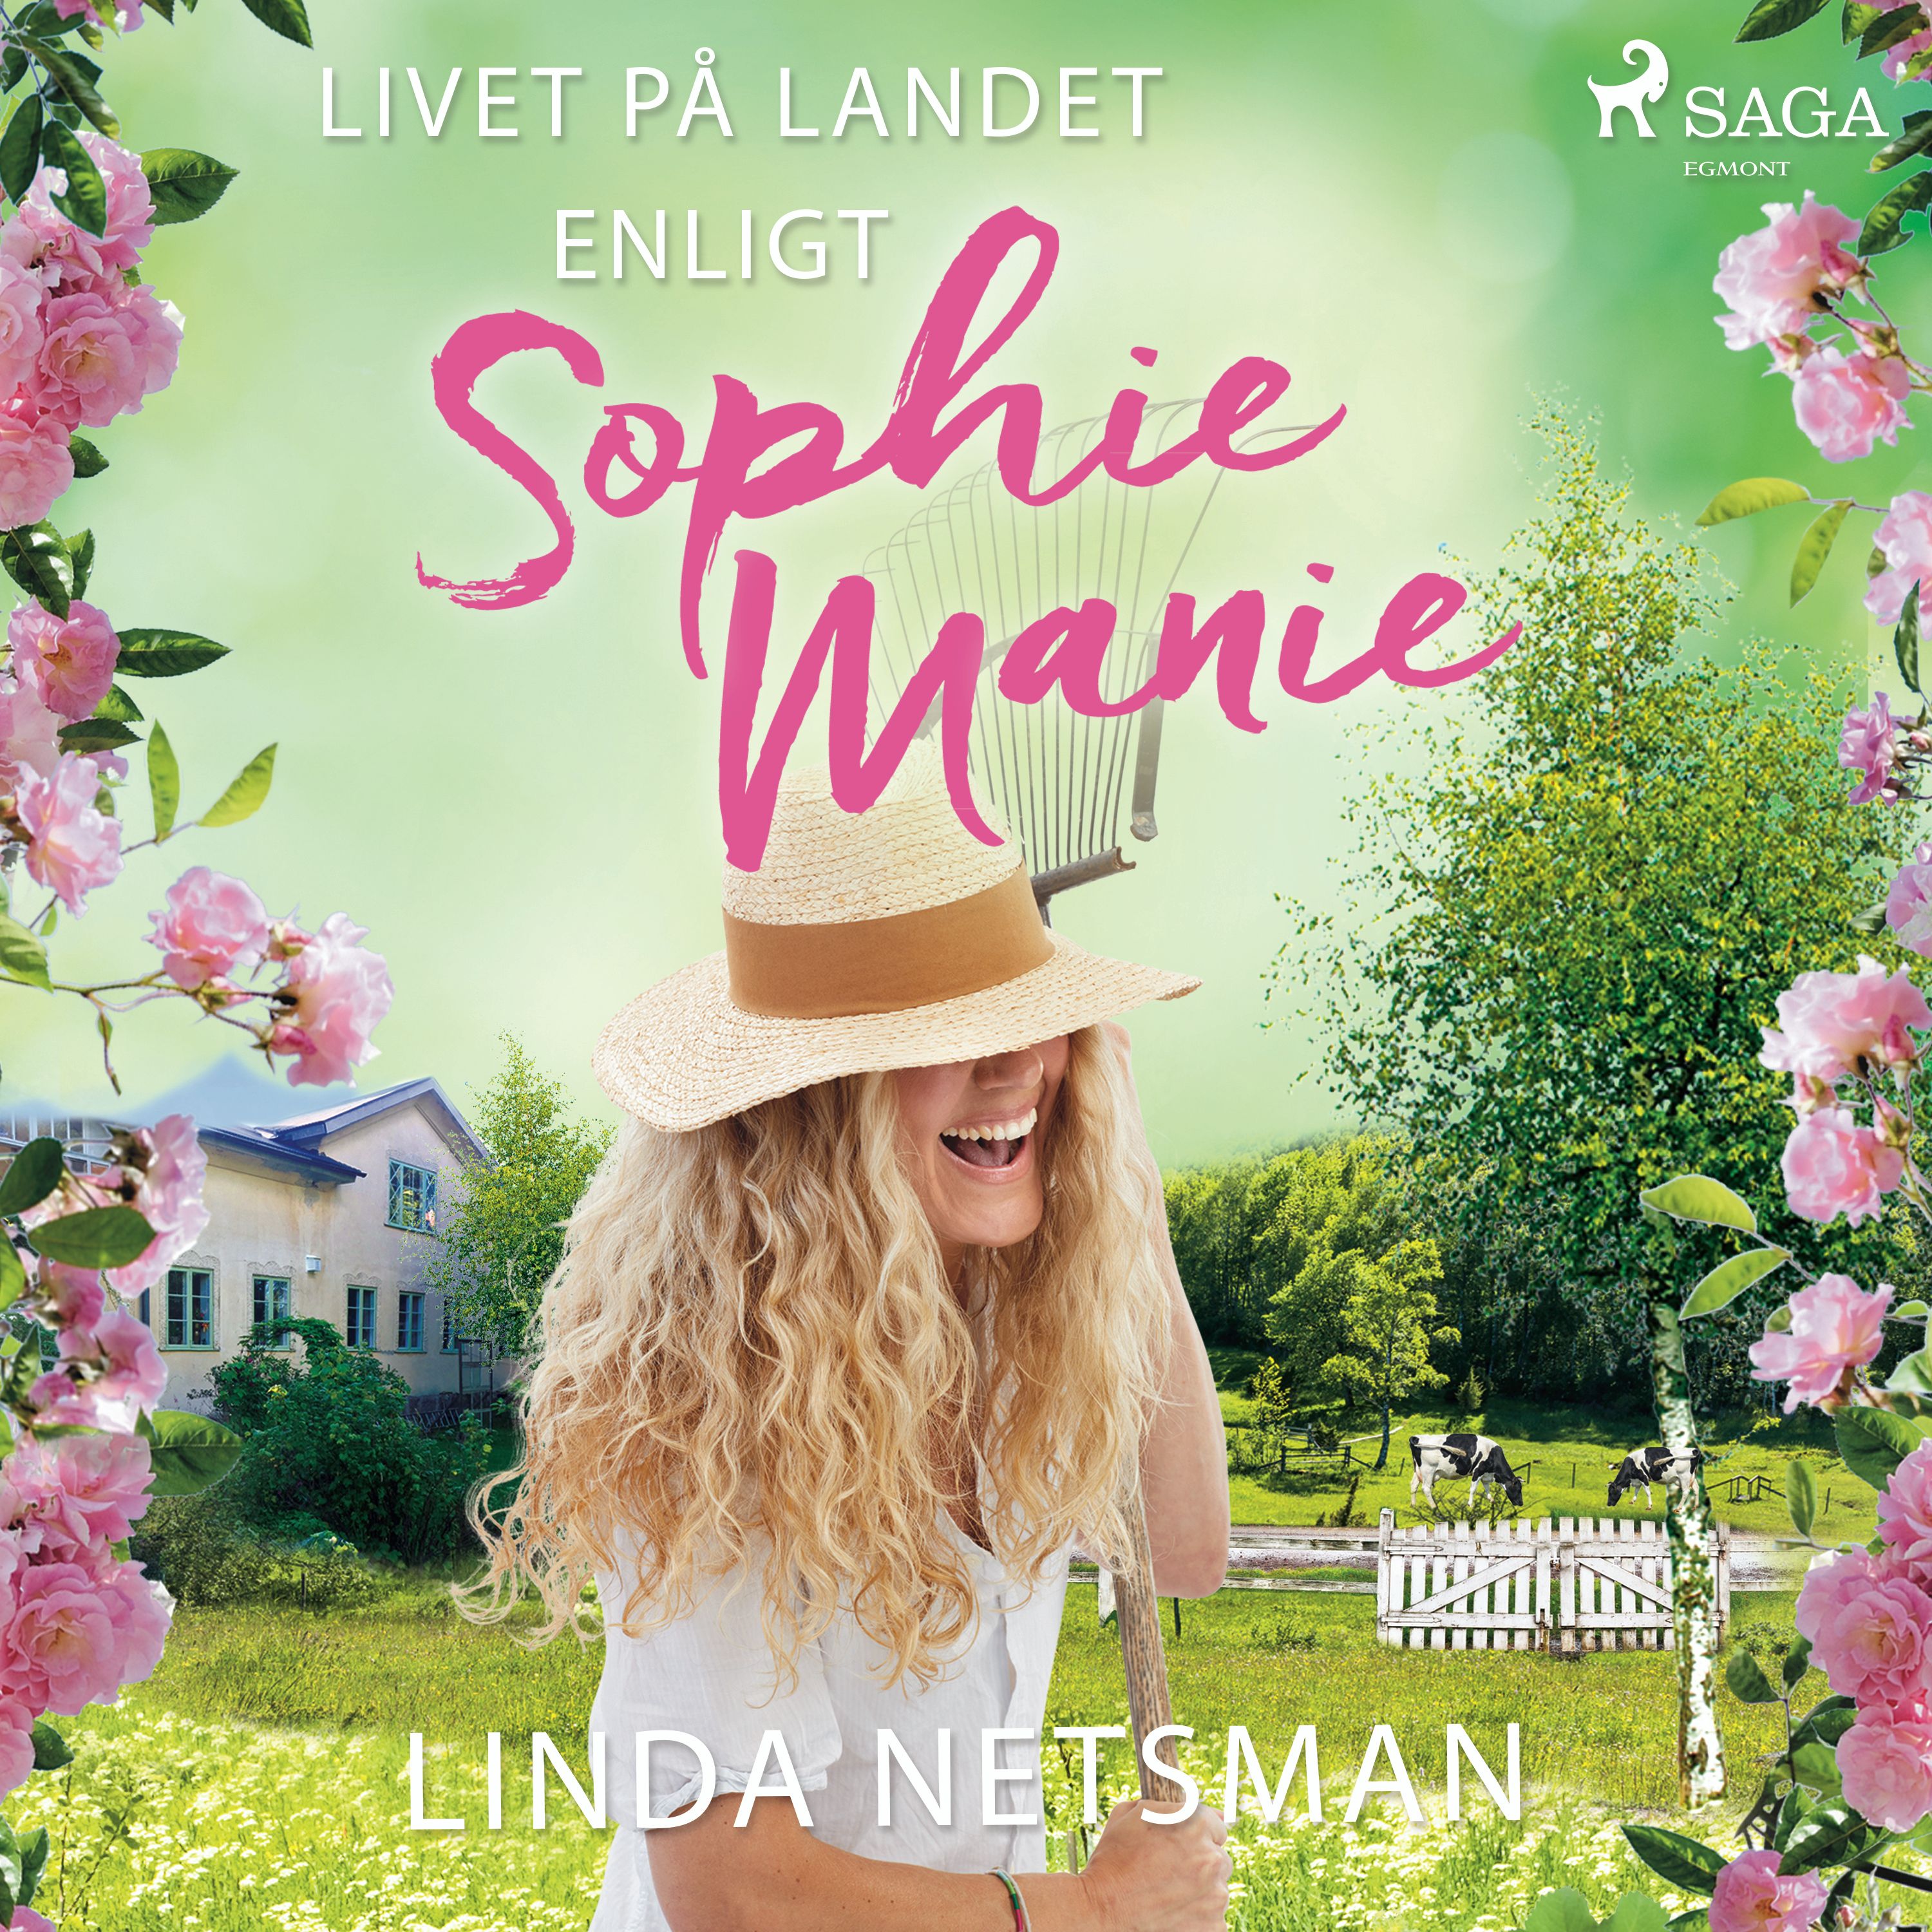 Livet på landet enligt Sophie Manie, ljudbok av Linda Netsman